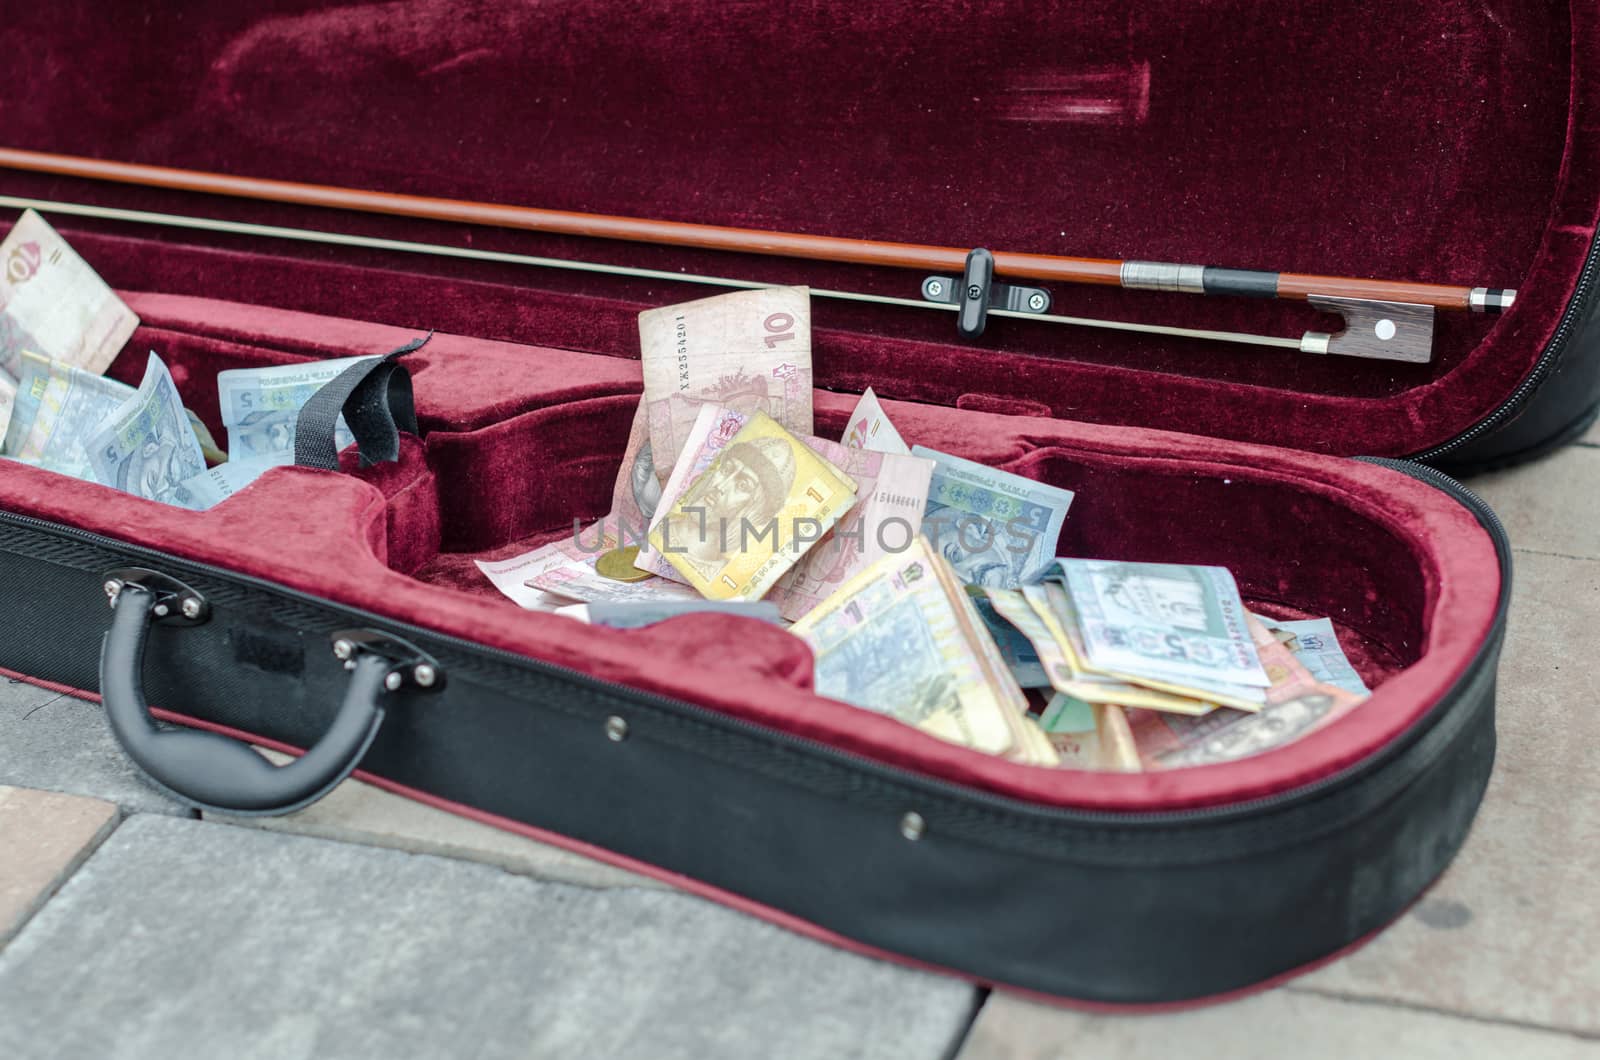 ukrainian money bills in a case of a street musician closeup